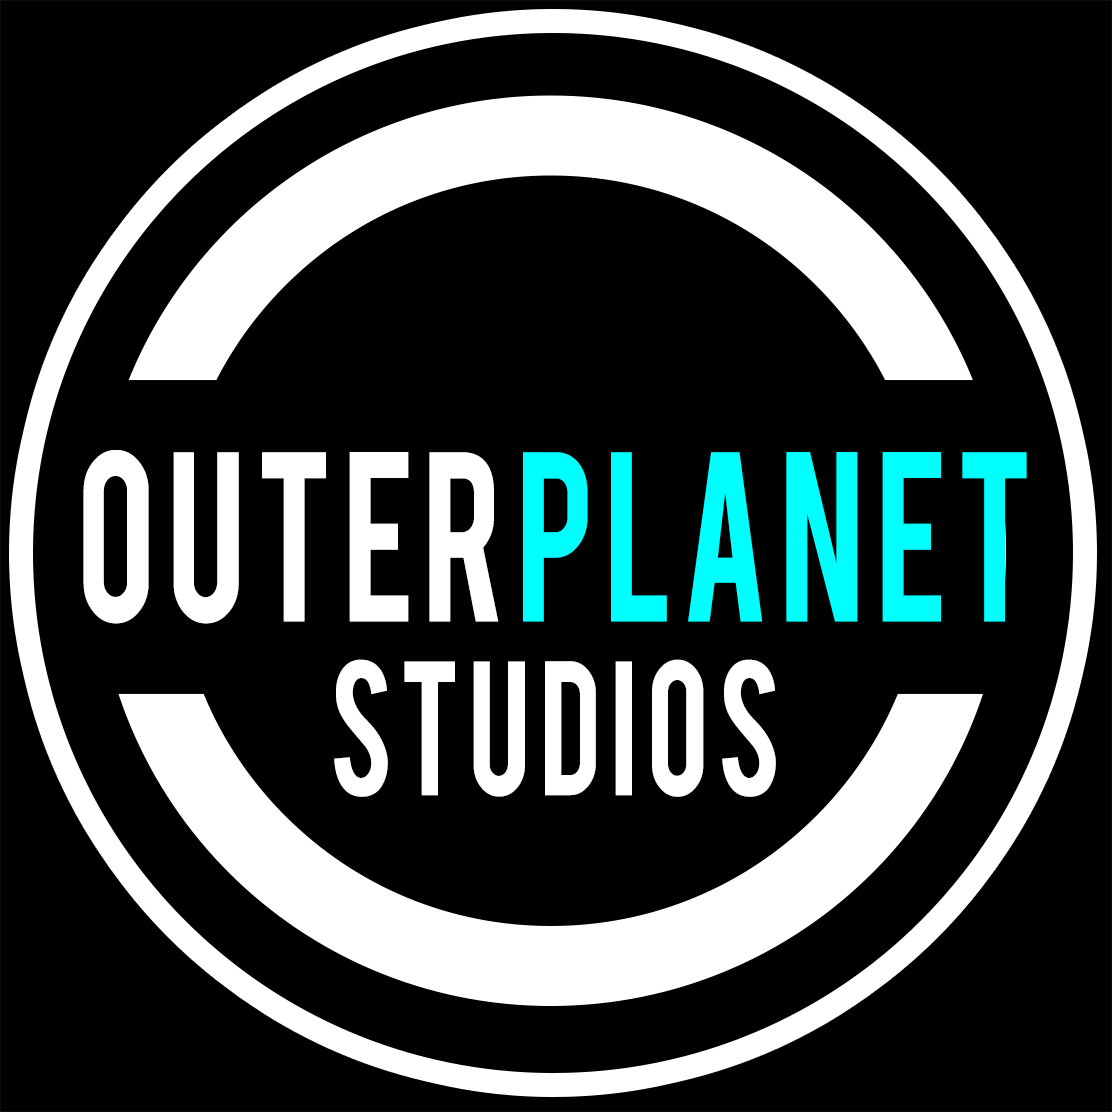 planetary studios fan expo